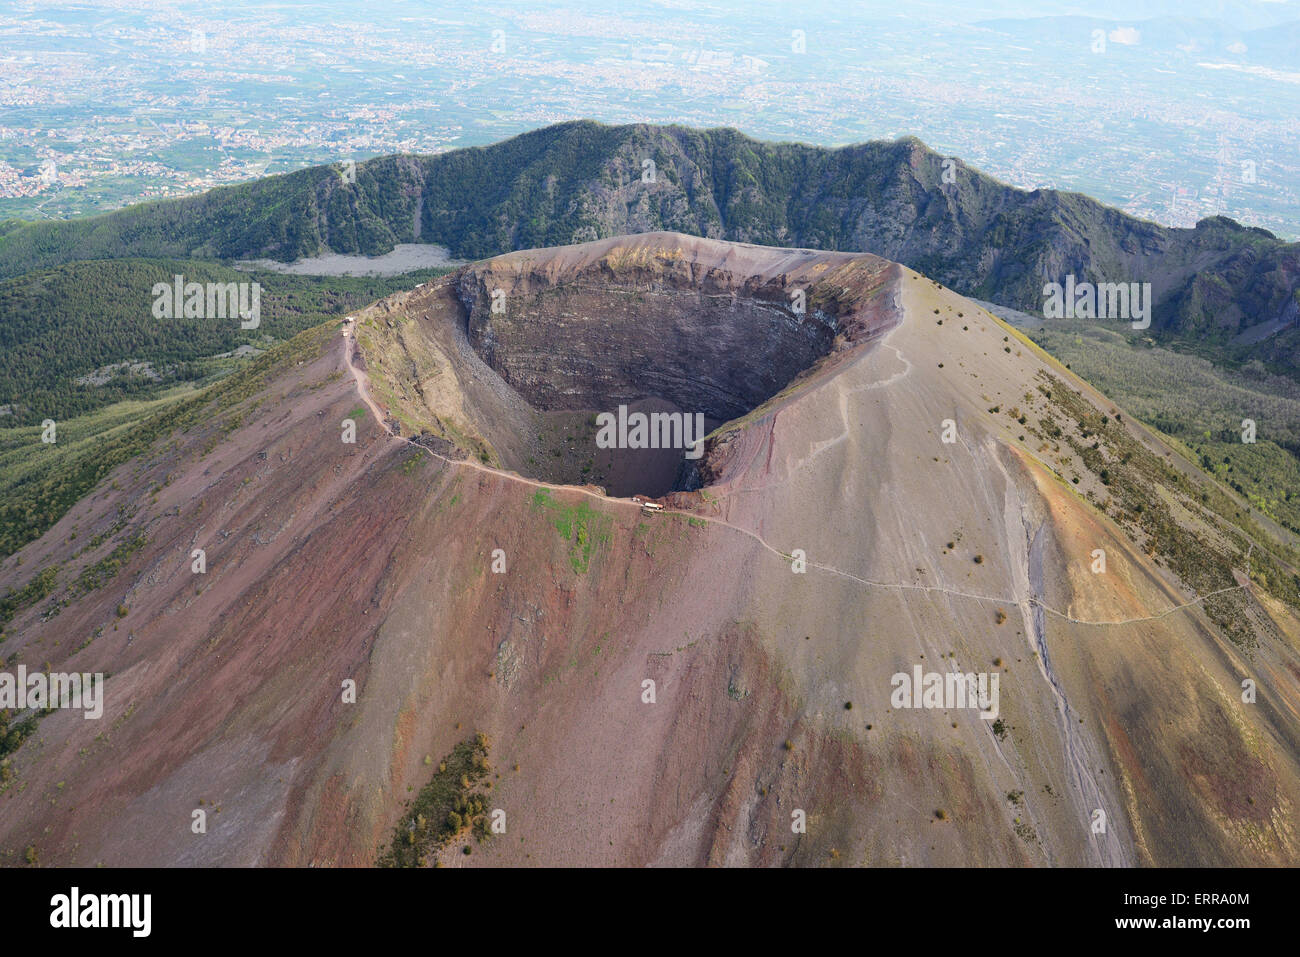 VISTA AEREA. Cratere del Vesuvio (quota 1281 m), Monte somma (quota 1132 m) alle spalle. Tra Napoli e Pompei, Campania, Italia. Foto Stock